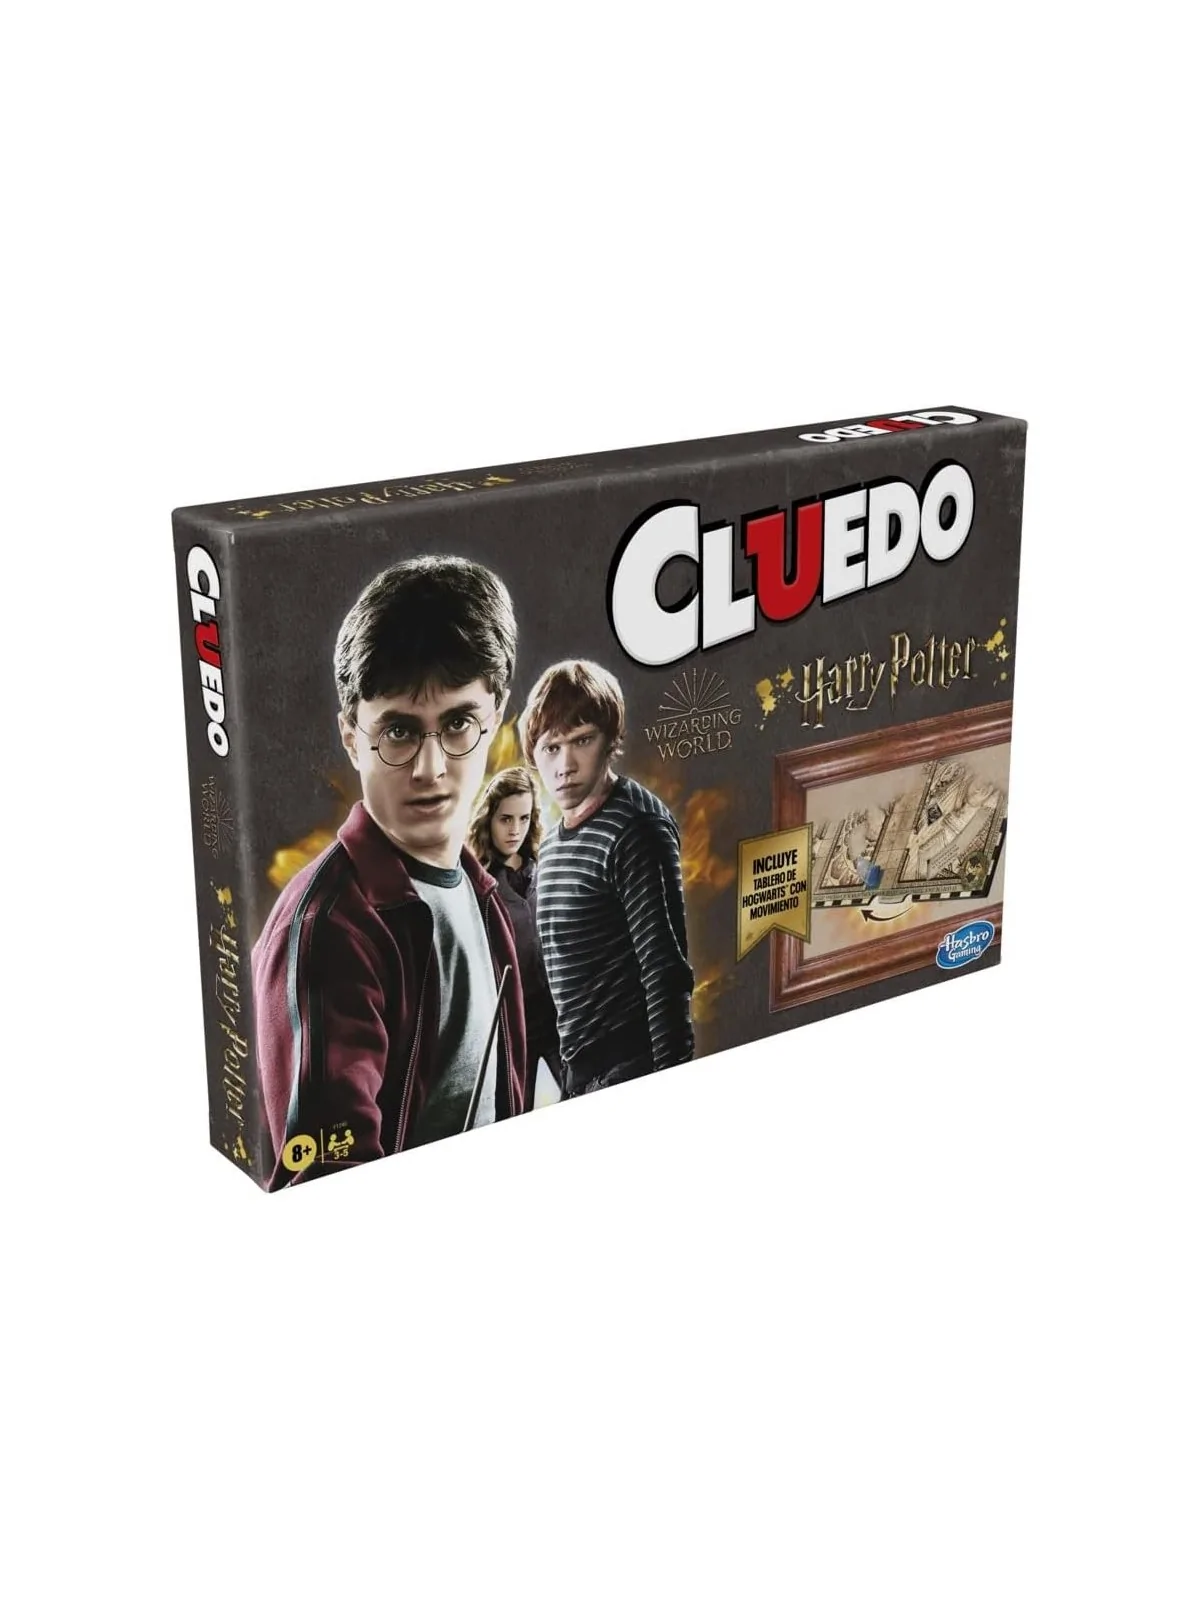 Comprar Cluedo Harry Potter barato al mejor precio 33,99 € de Hasbro